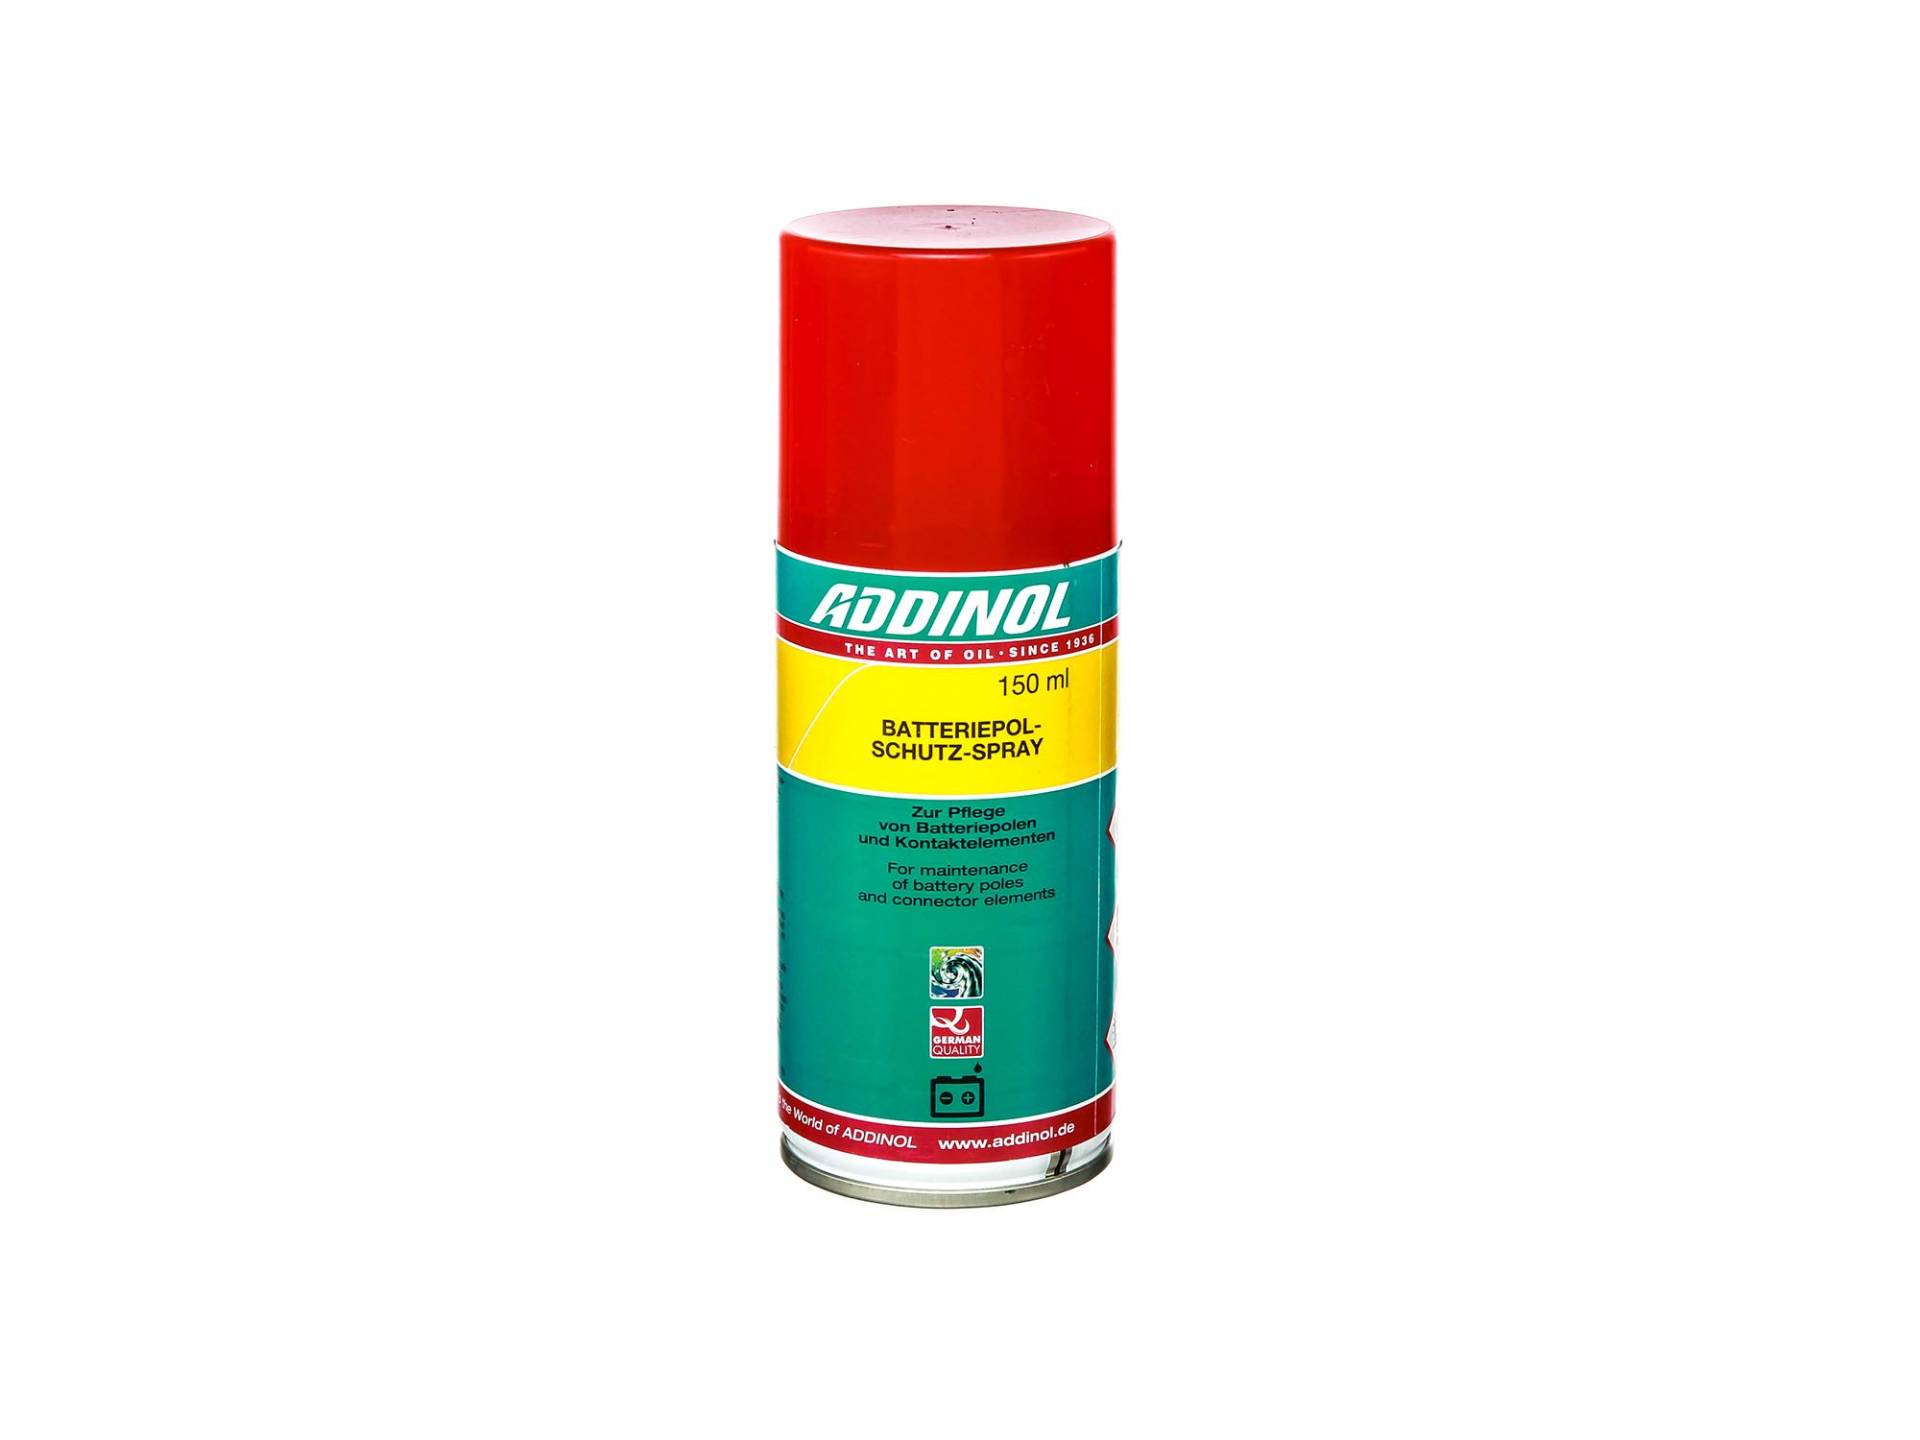 ADDINOL Batteriepol-Schutz-Spray (FLIESSFETT), zum Sprühen, mineralisch, farblos, 150ml Spraydose von Addinol